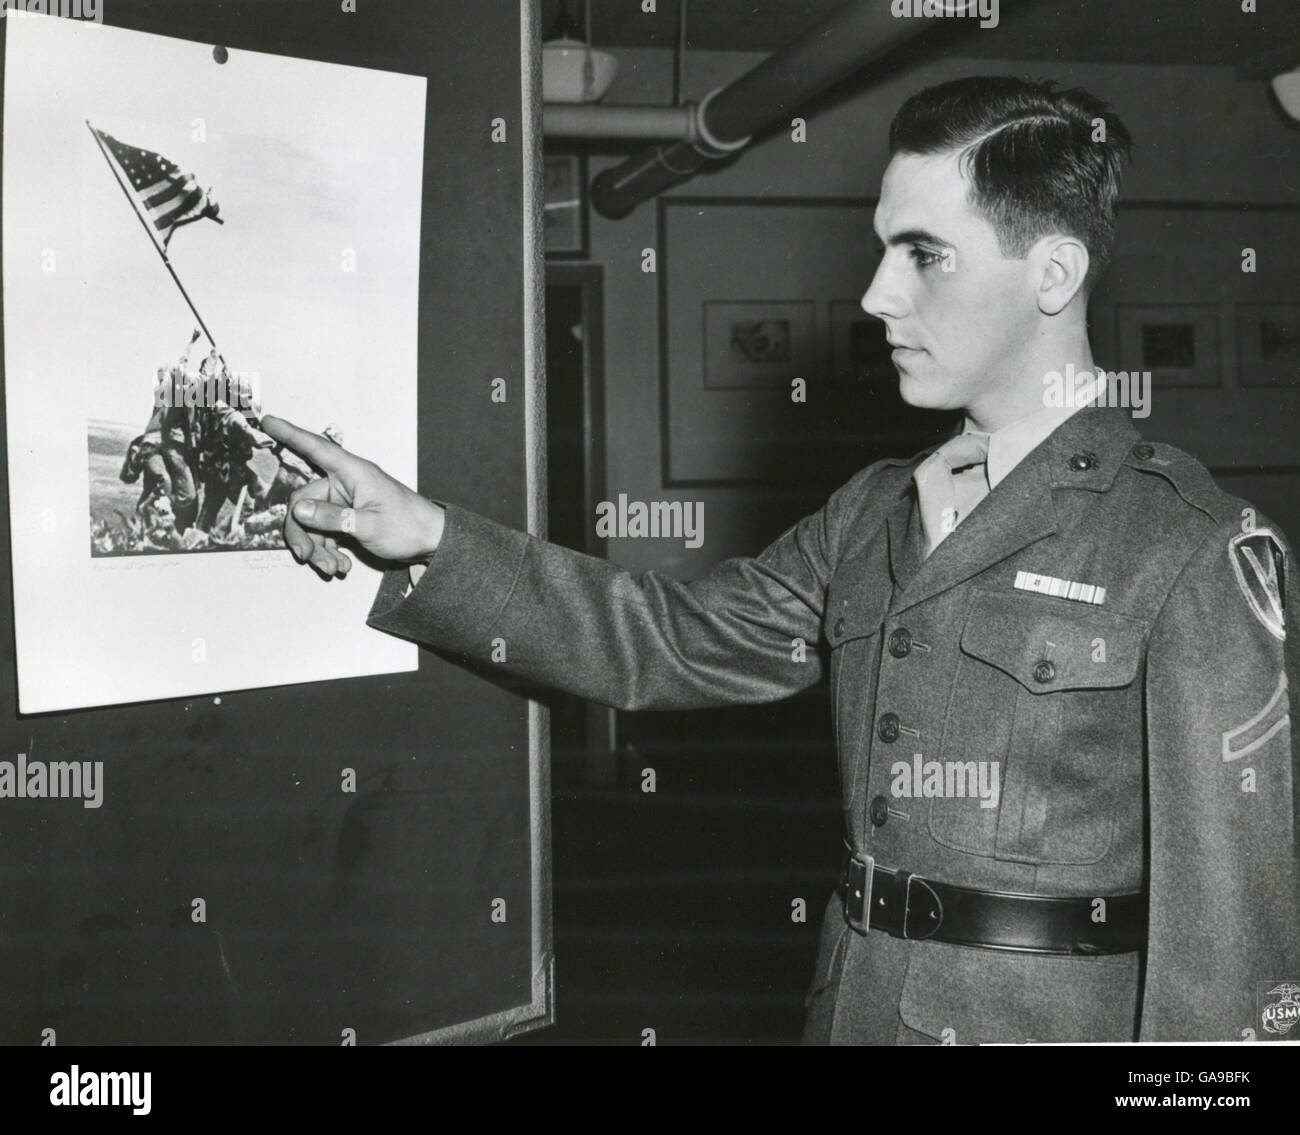 Marine Private First Class Rene Gagnon verweist auf die Figur von sich selbst auf den Fotos der Marines Anhebung Old Glory auf Iwo Jima Berg Suribachi. Das Bild wird für das neue 7. Kriegsanleihe Poster verwendet werden. Stockfoto